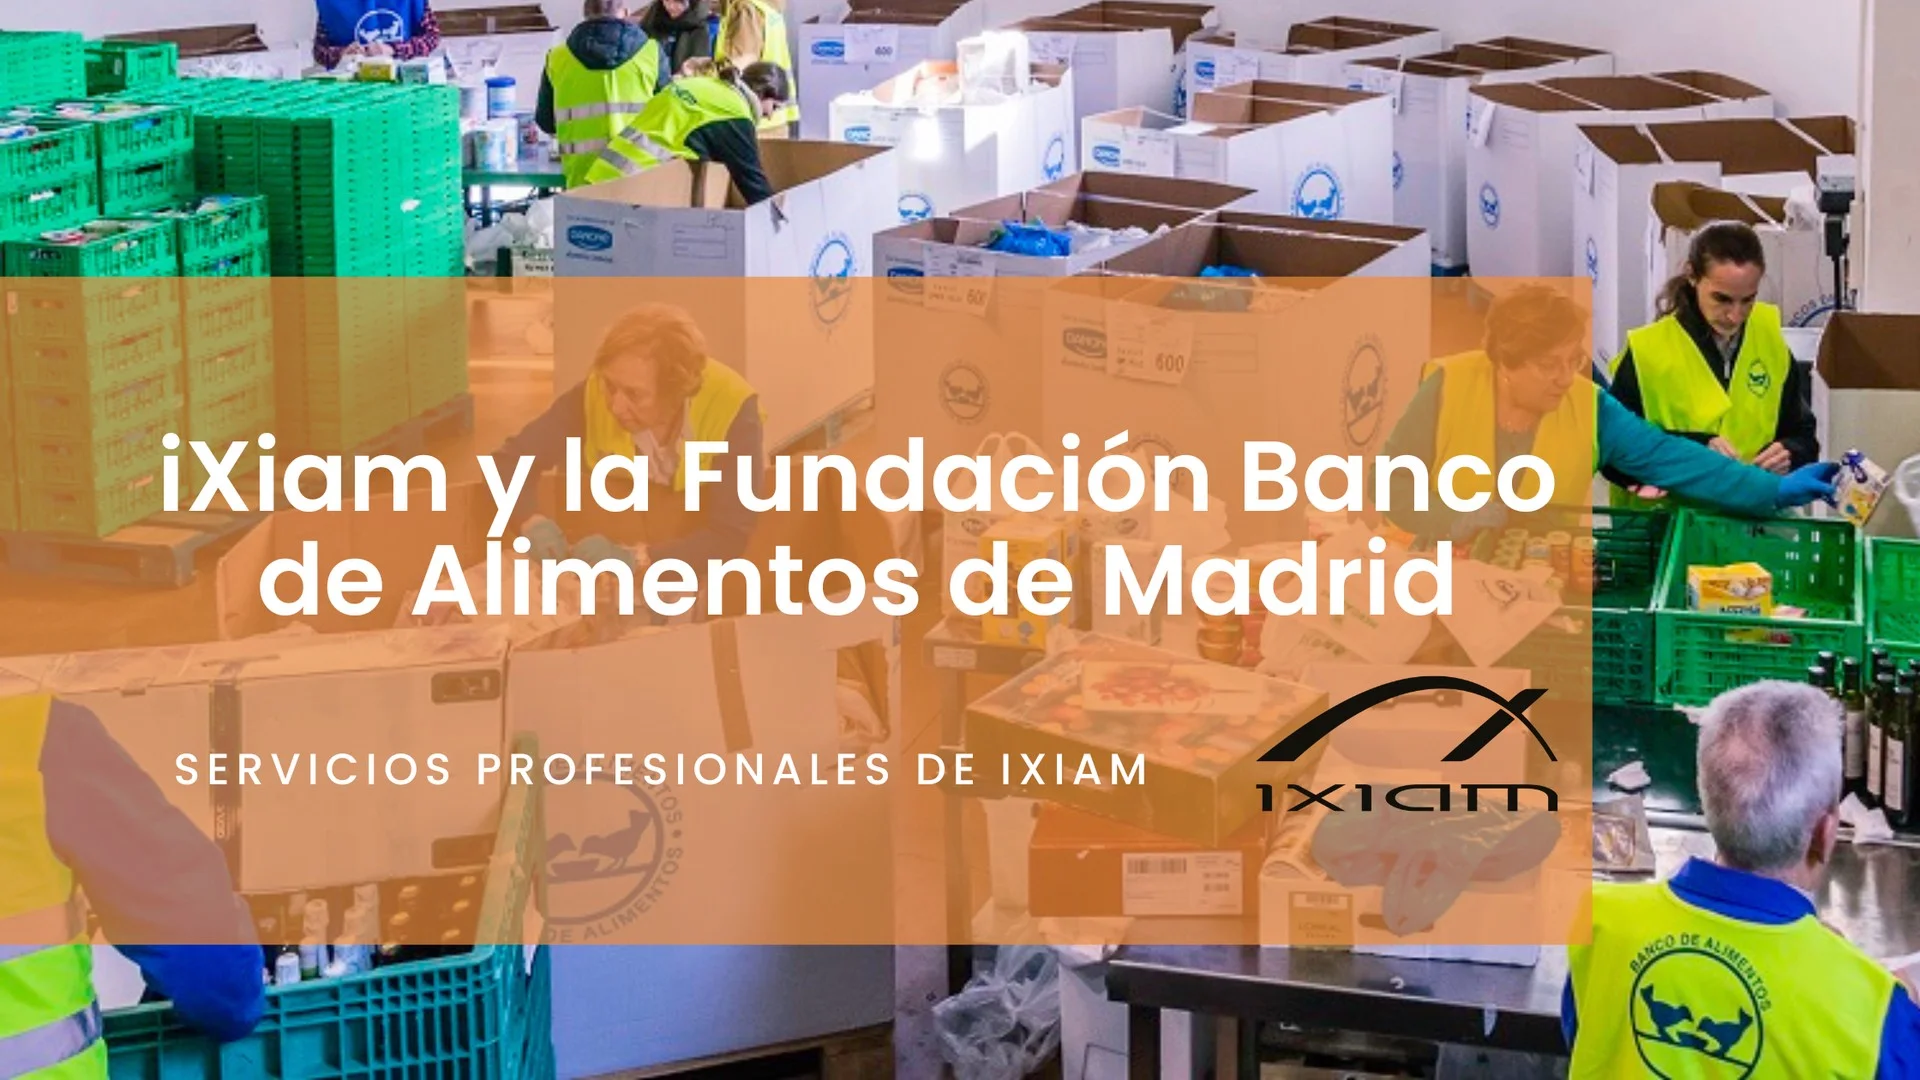 Ixiam y el banco de alimentos de madrid trabajan mano a mano para mejorar la vida de los más necesitados